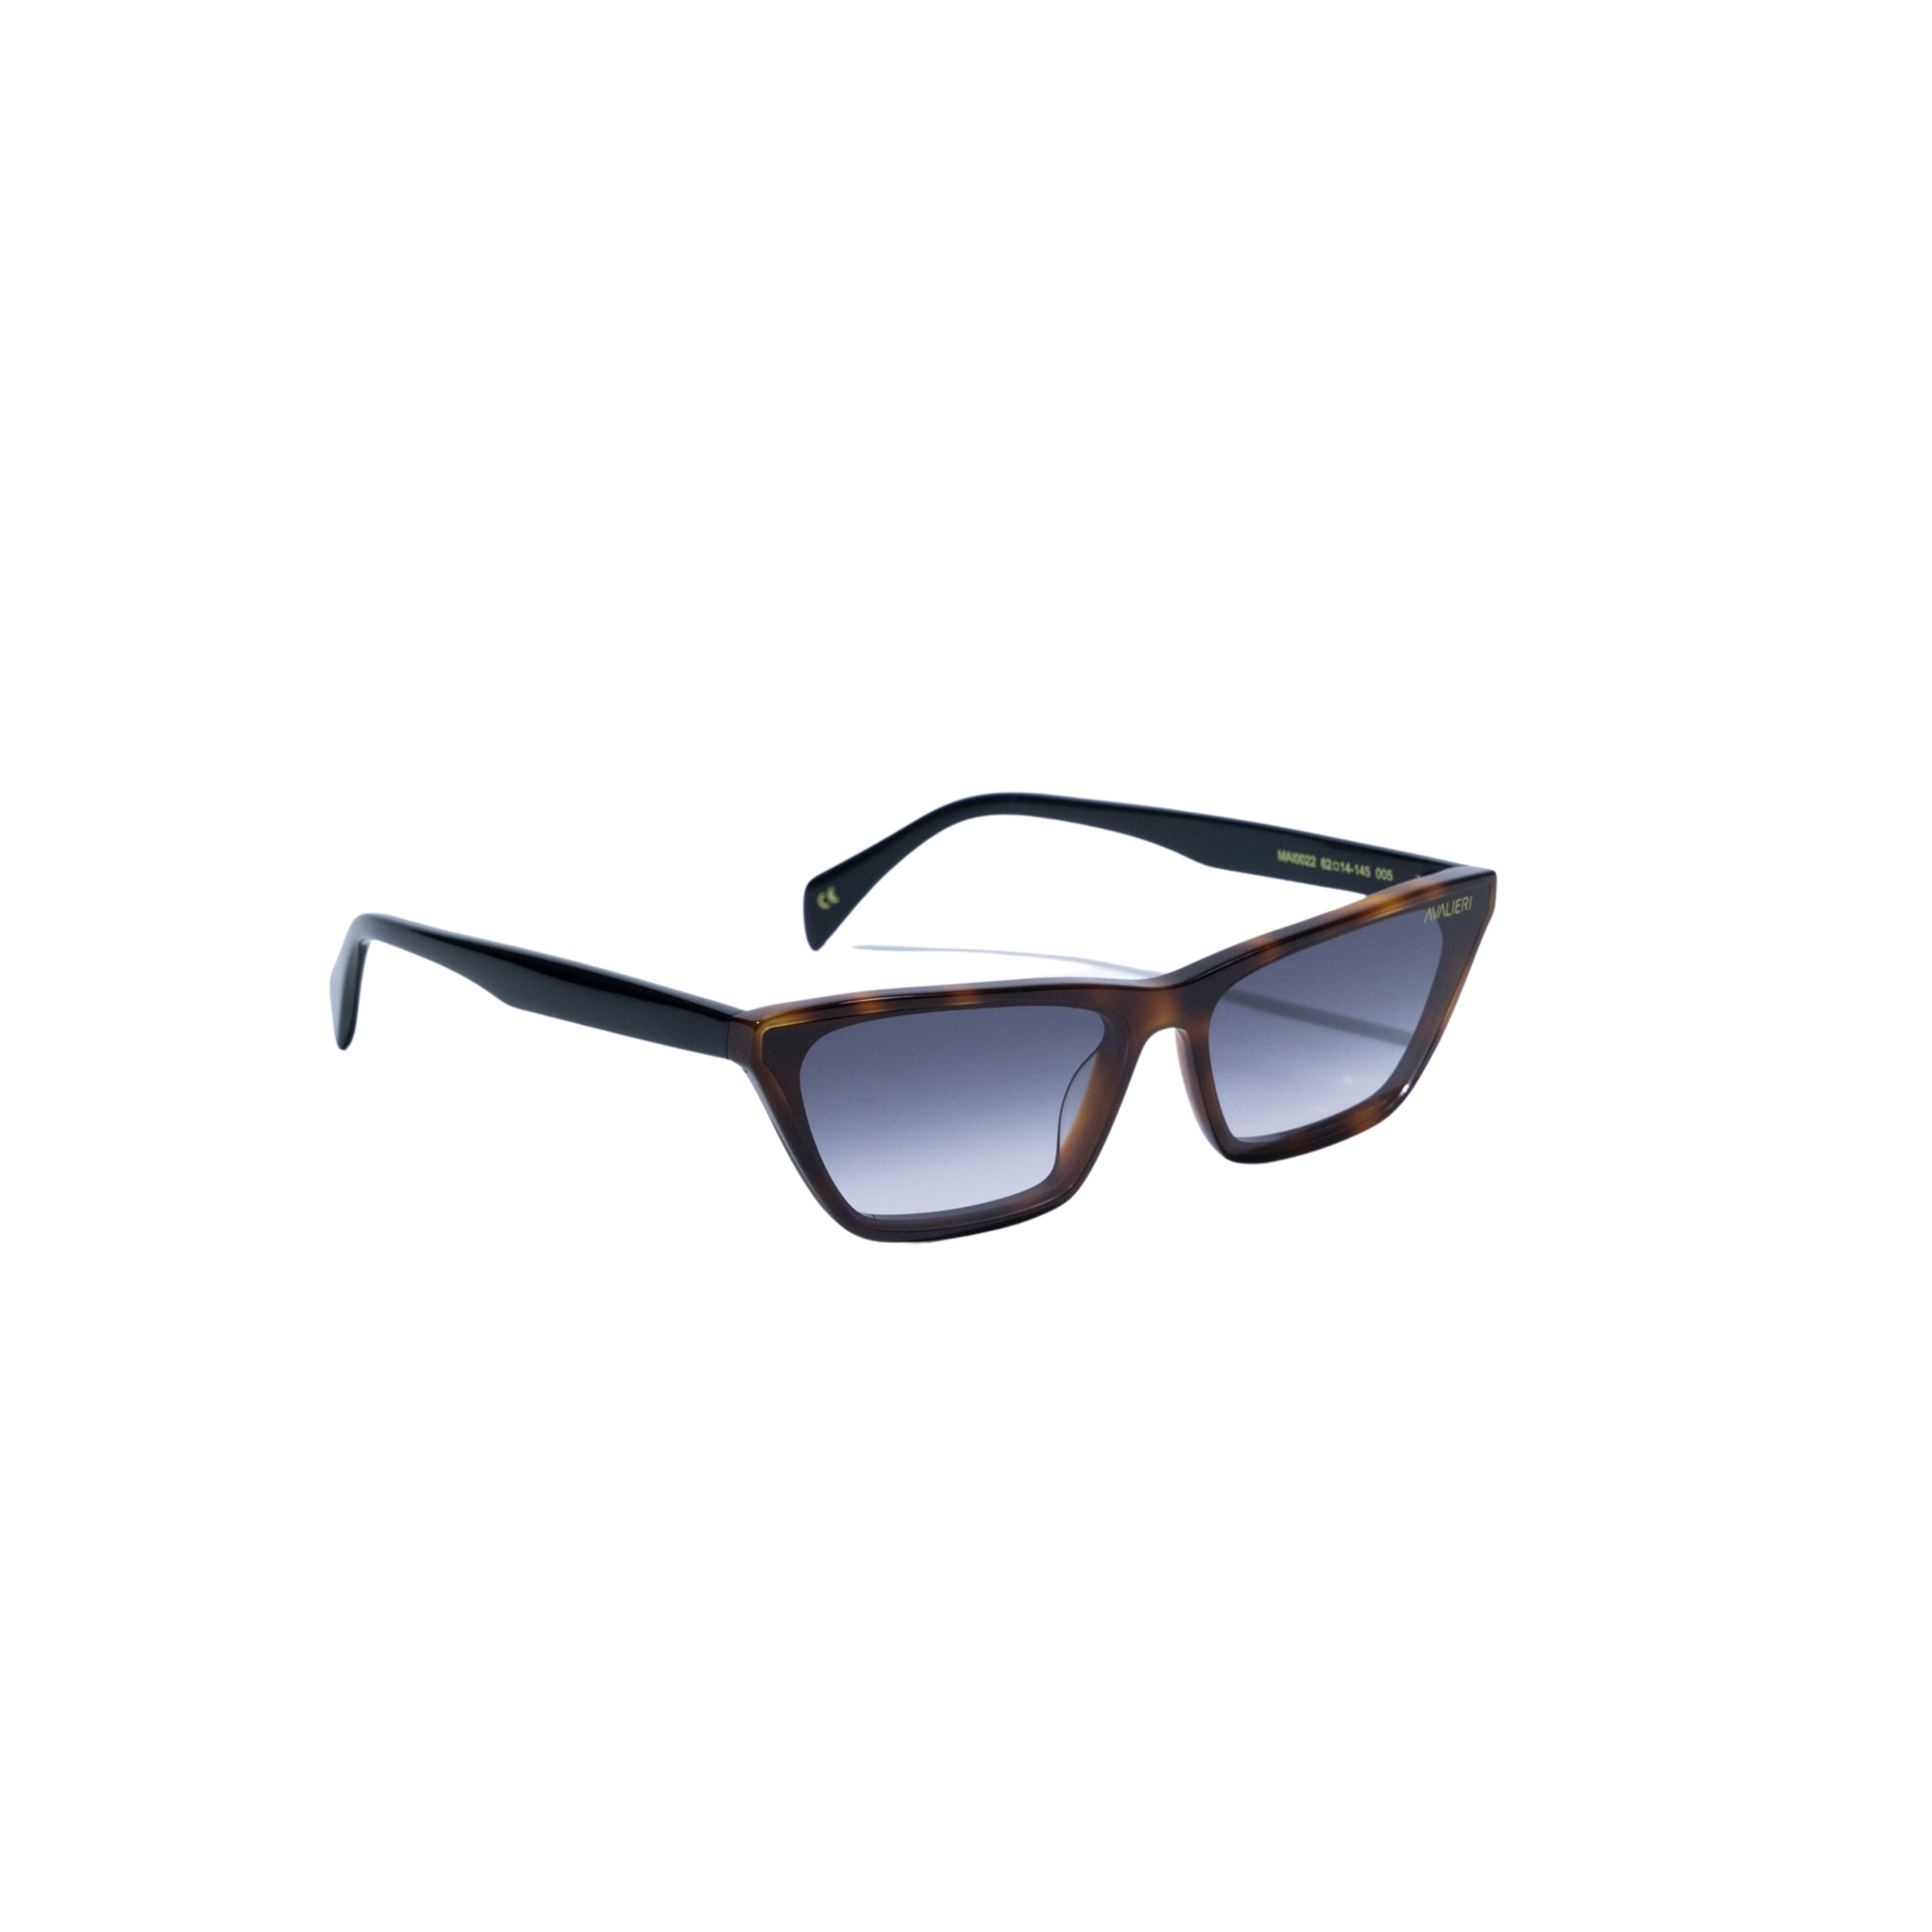 Avalieri Black Sunglasses for Men and Women - AVSG-0003